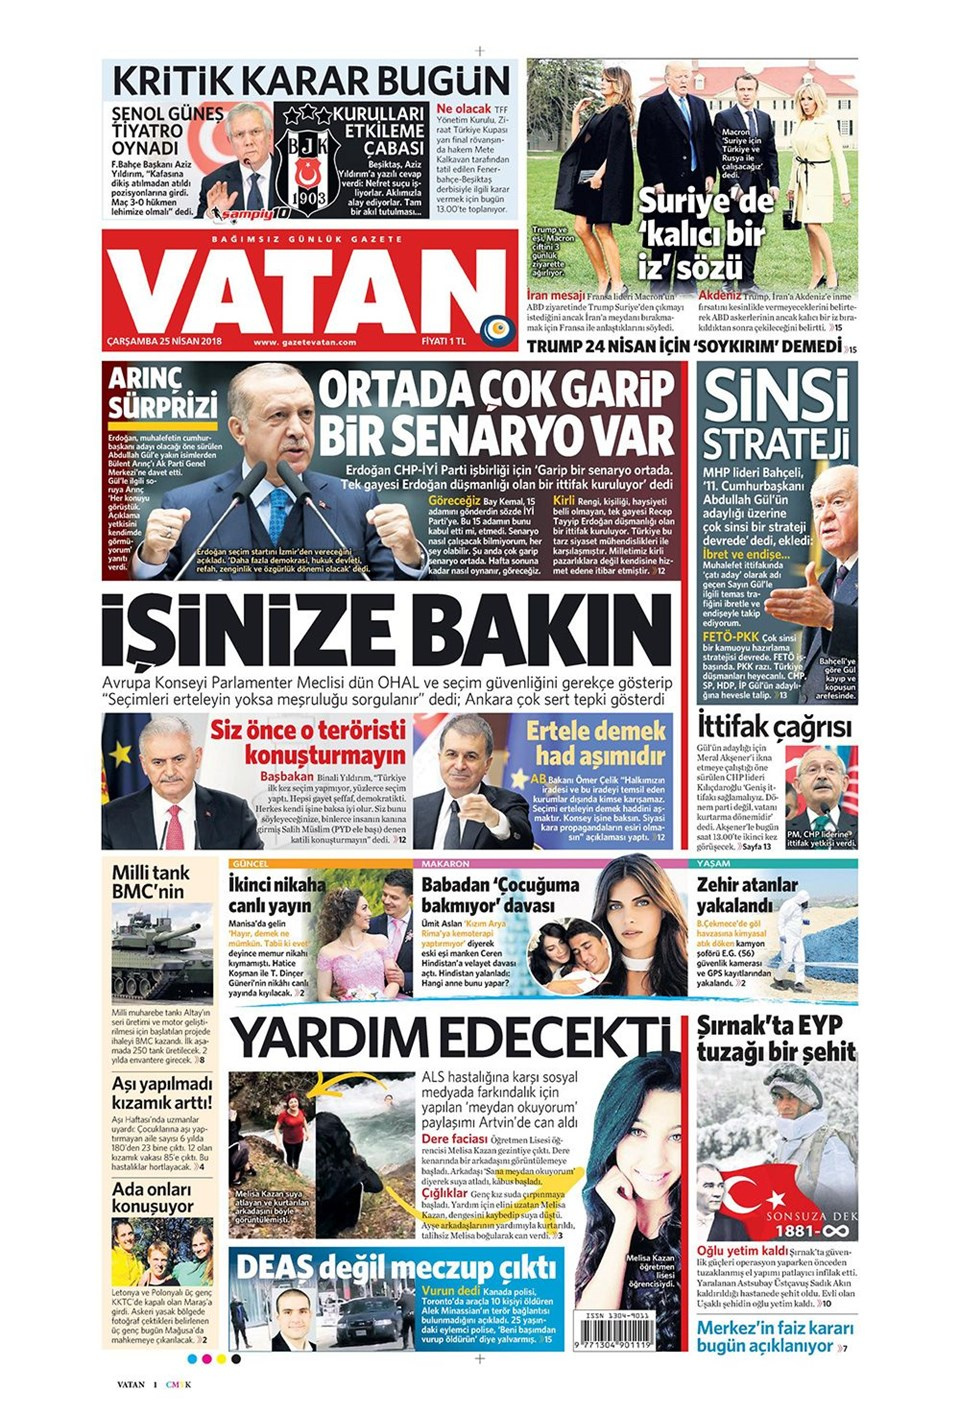 Gazete manşetleri 25 Nisan 2018 Hürriyet - Sözcü - Habertürk